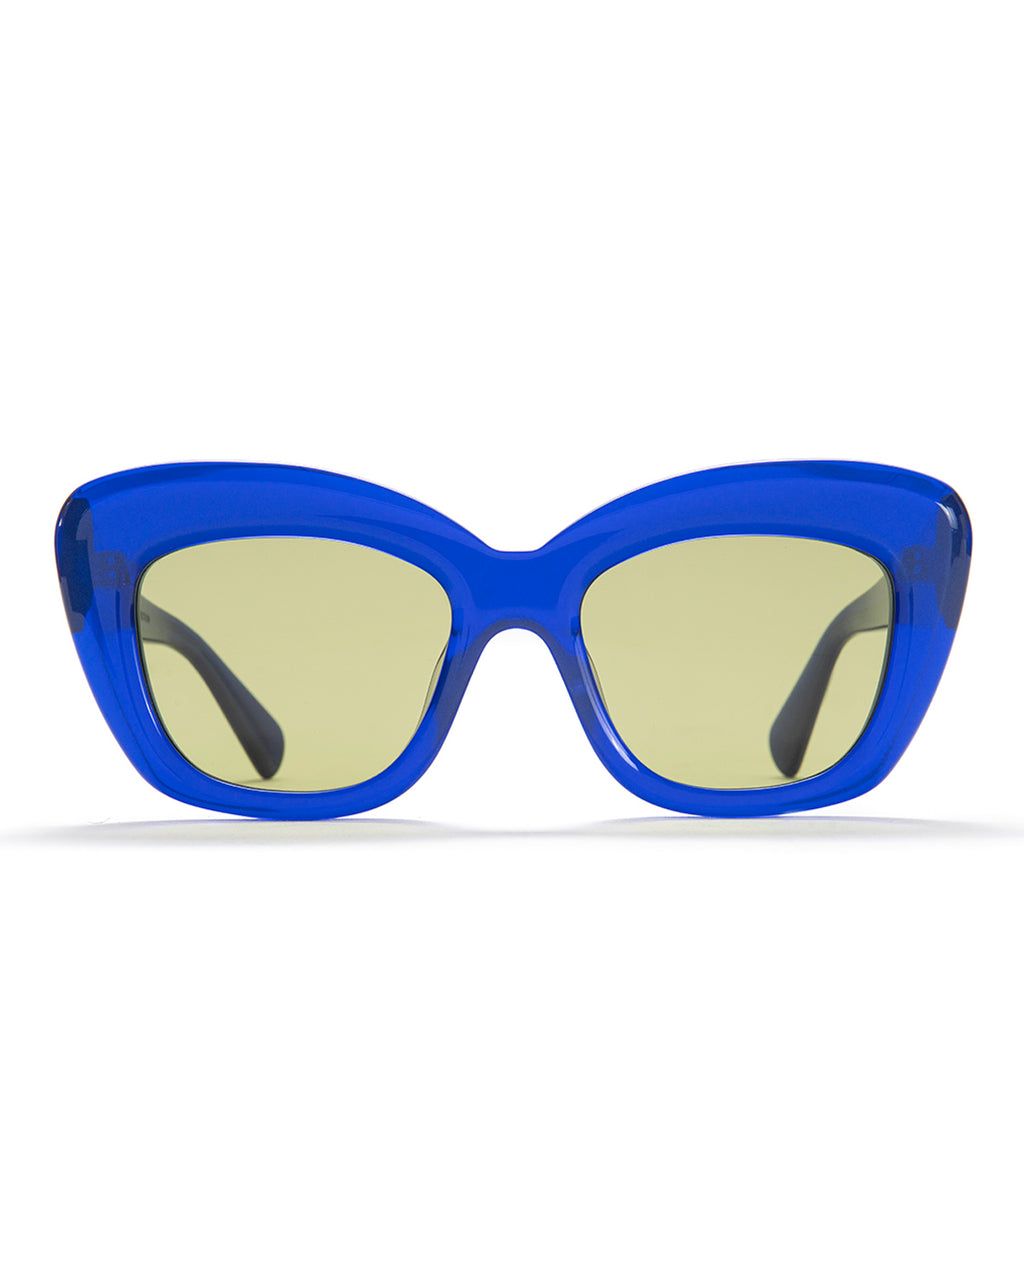 Chibi Sunglasses - Translucent Blue